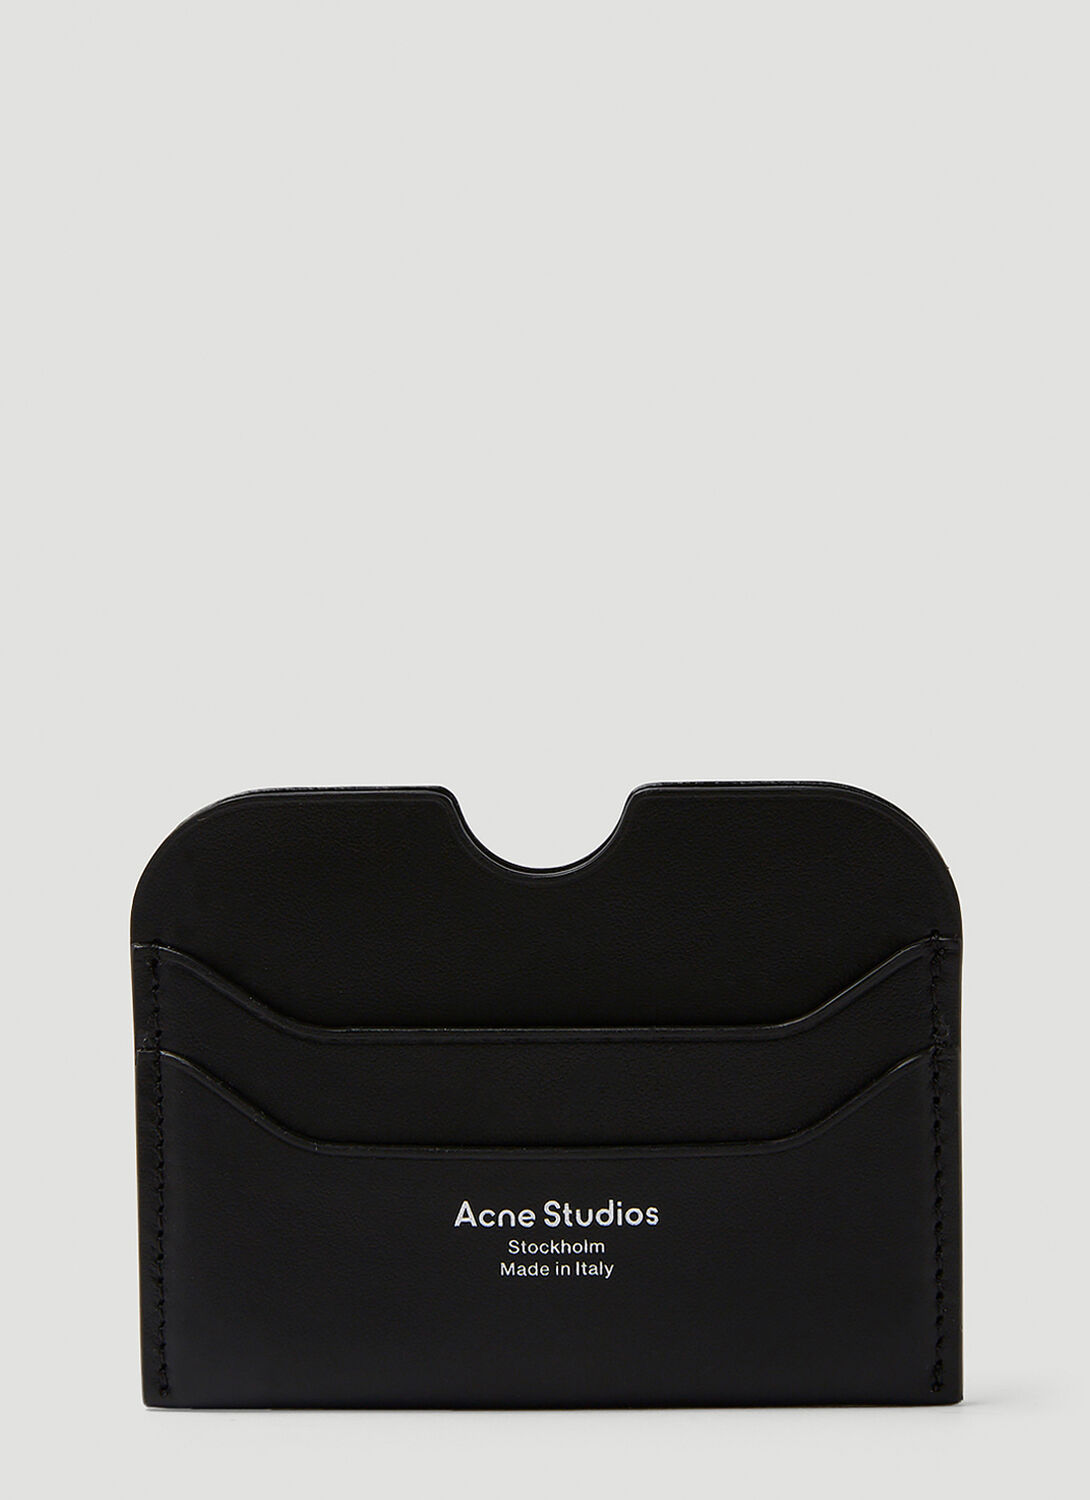 Acne Studios Leather Cardholder In Black